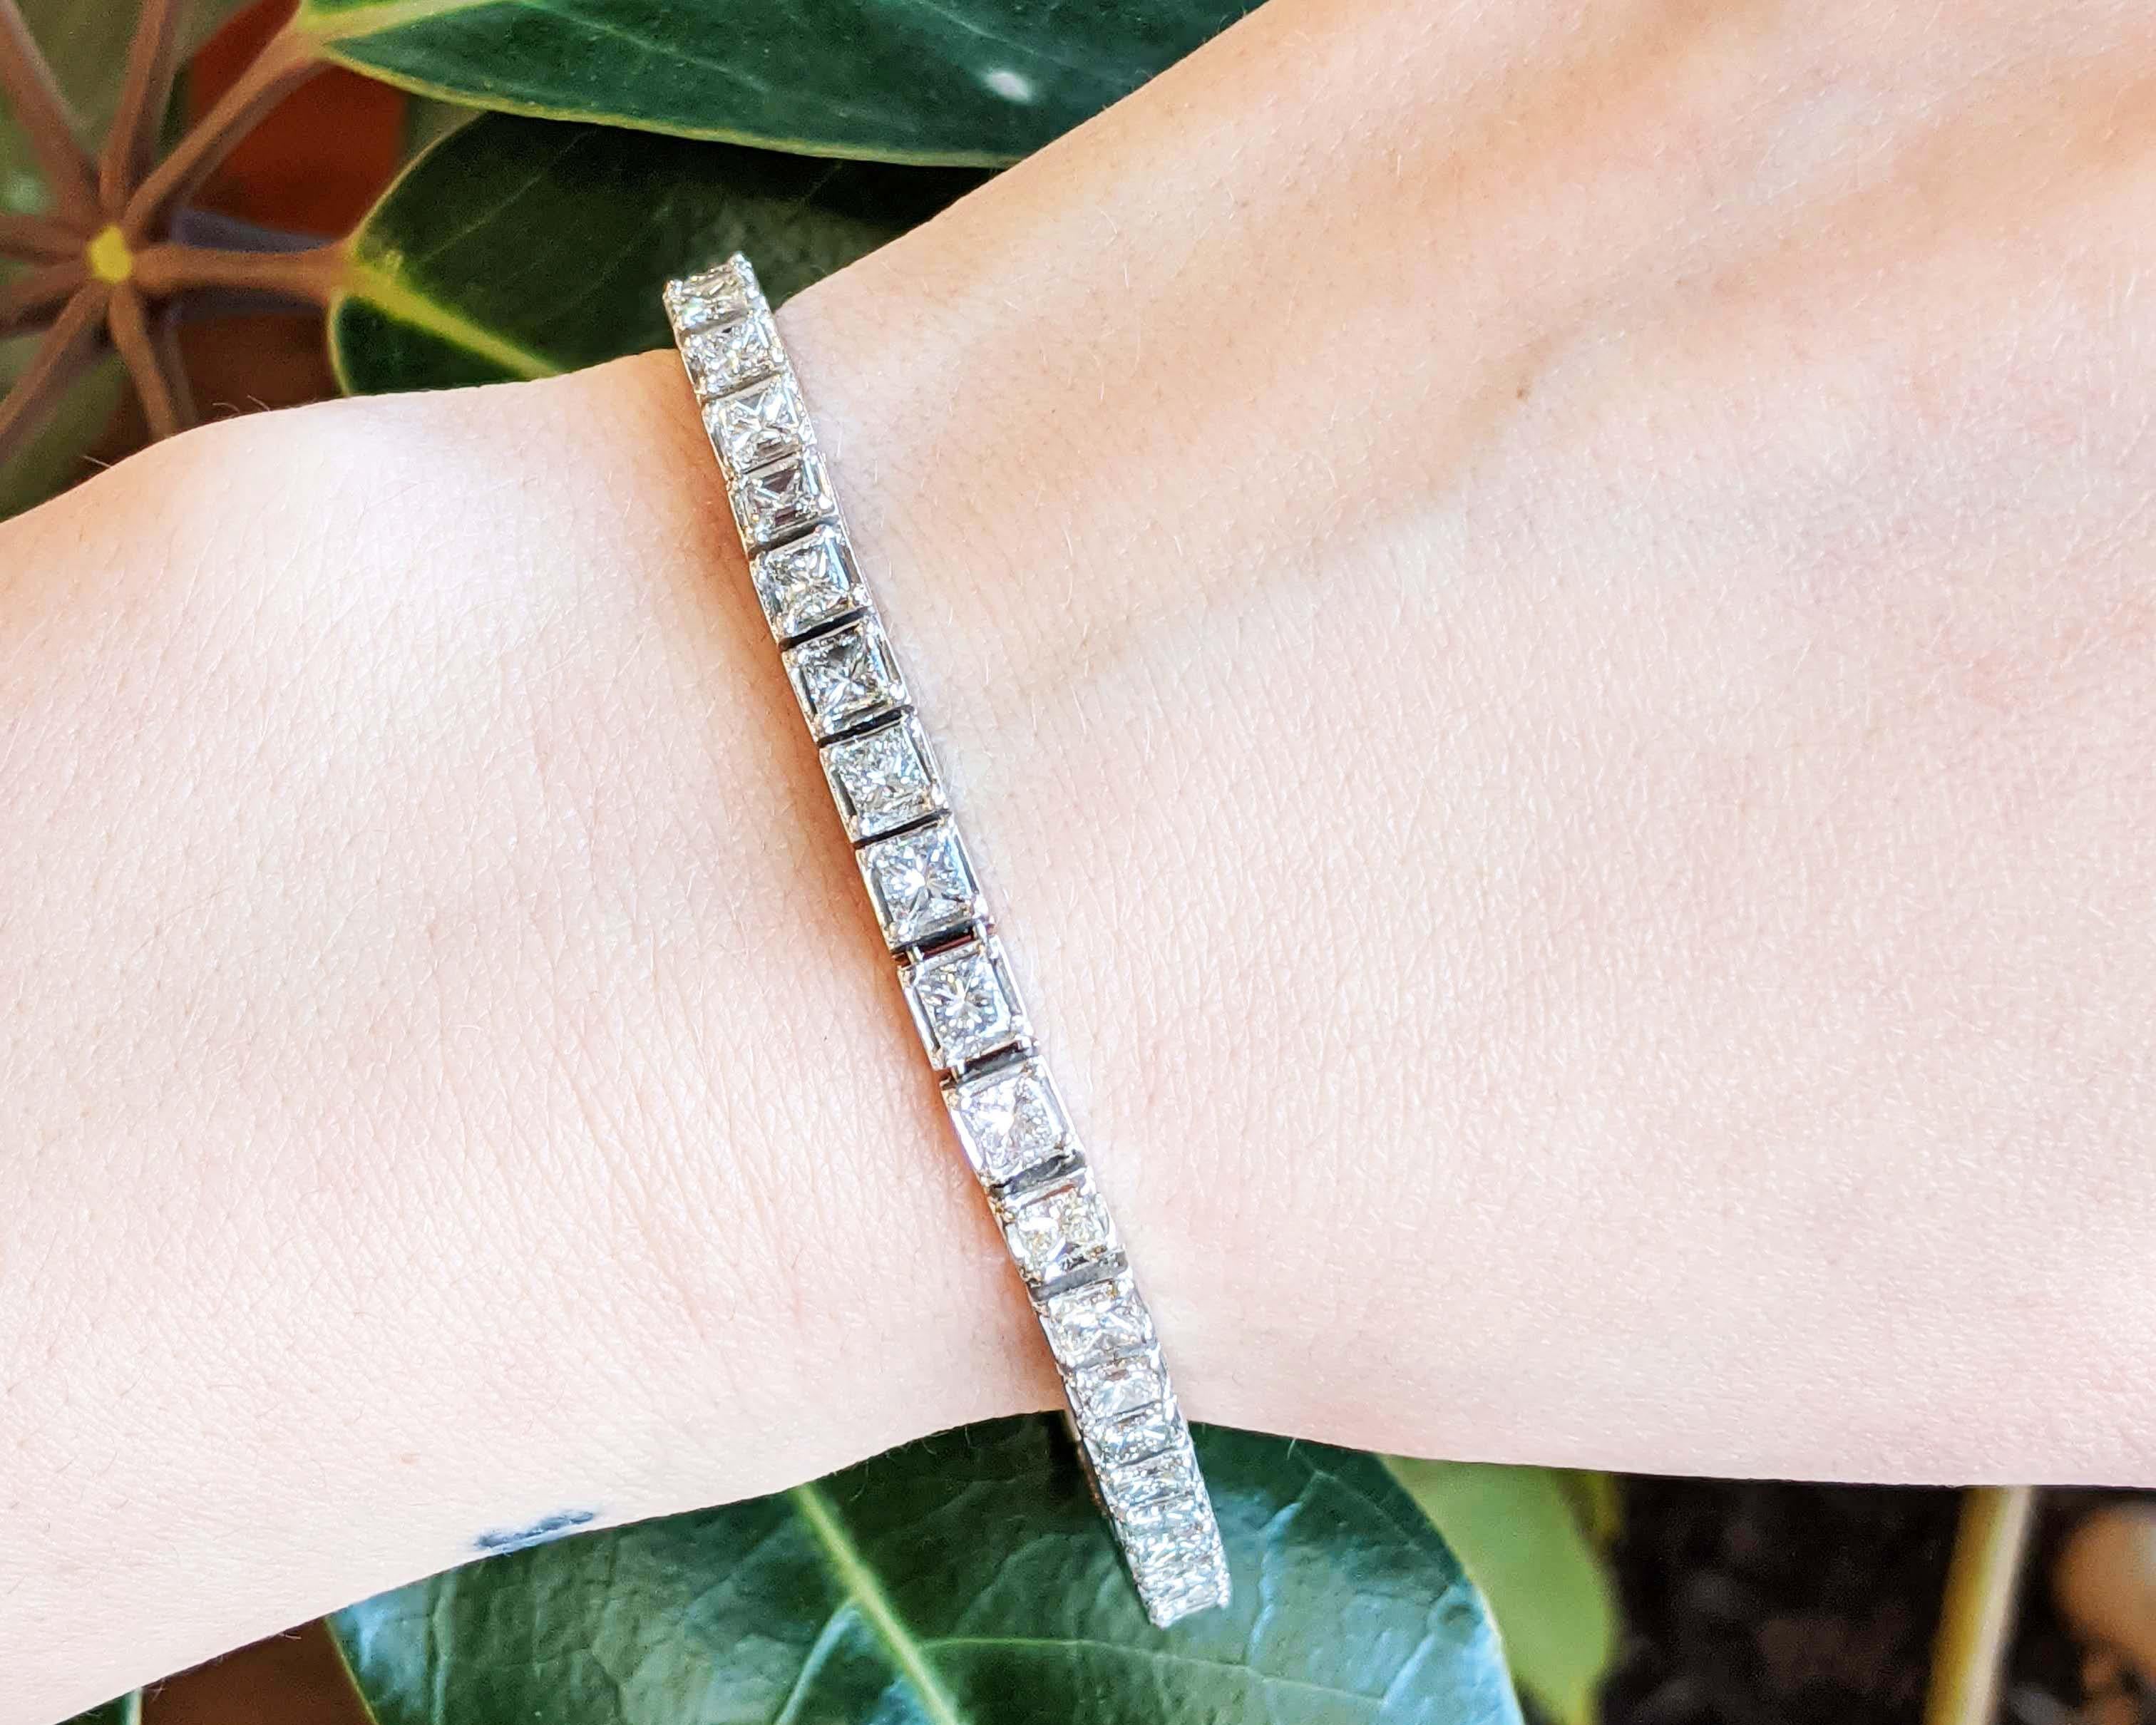 Il s'agit d'un élégant bracelet en ligne de diamants en platine blanc brillant, avec des diamants blancs de taille princesse ! Ce bracelet reprend le look classique des bracelets en ligne et l'agrémente de 39 superbes diamants taille princesse. Ce